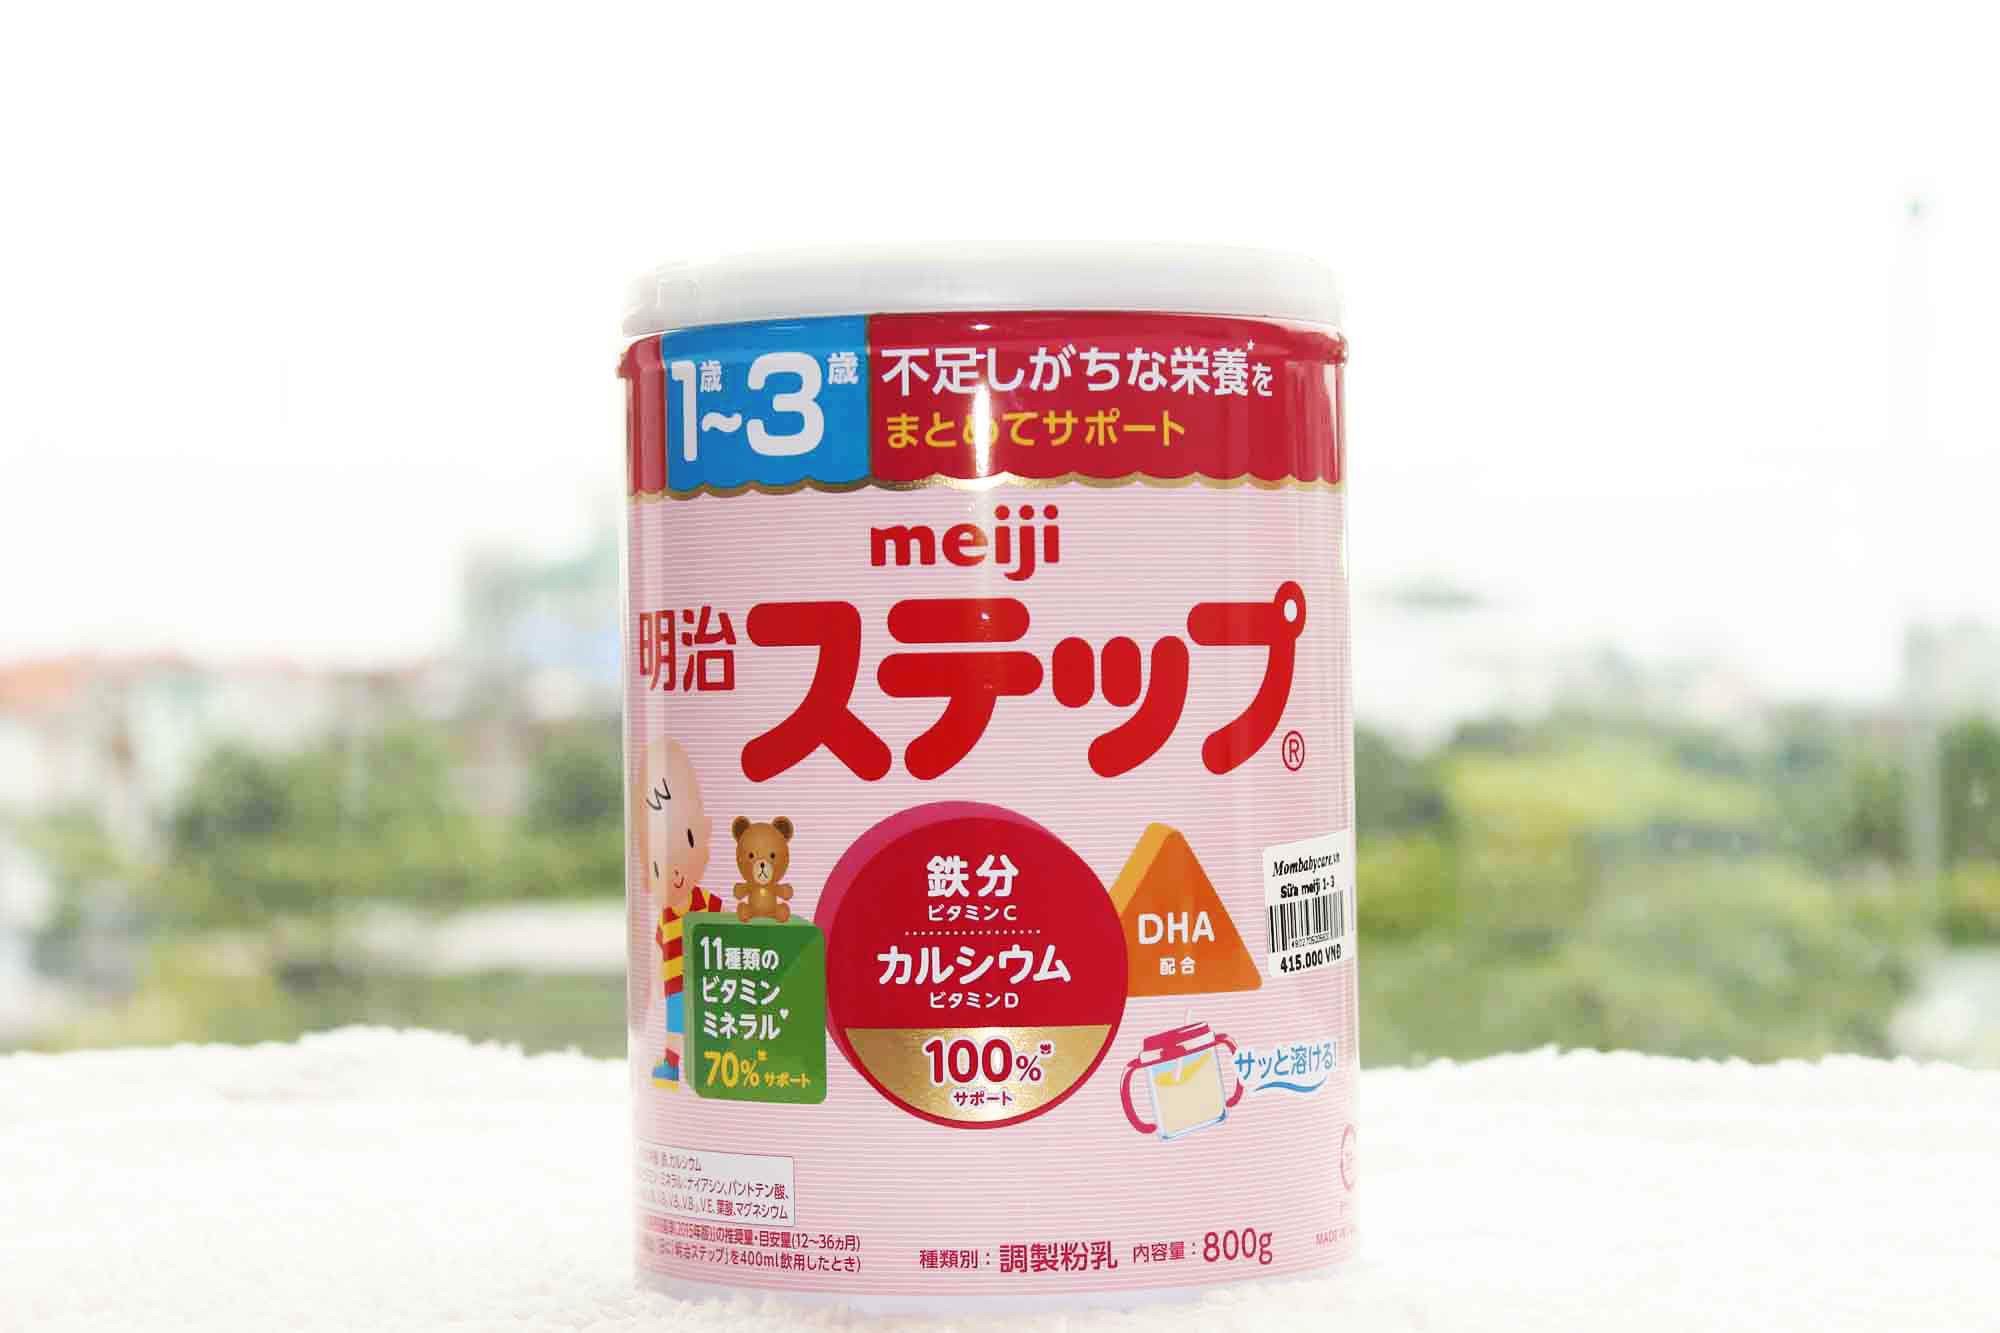 Nên mua sữa Meiji nhập khẩu hay xách tay thì tốt hơn cho con?